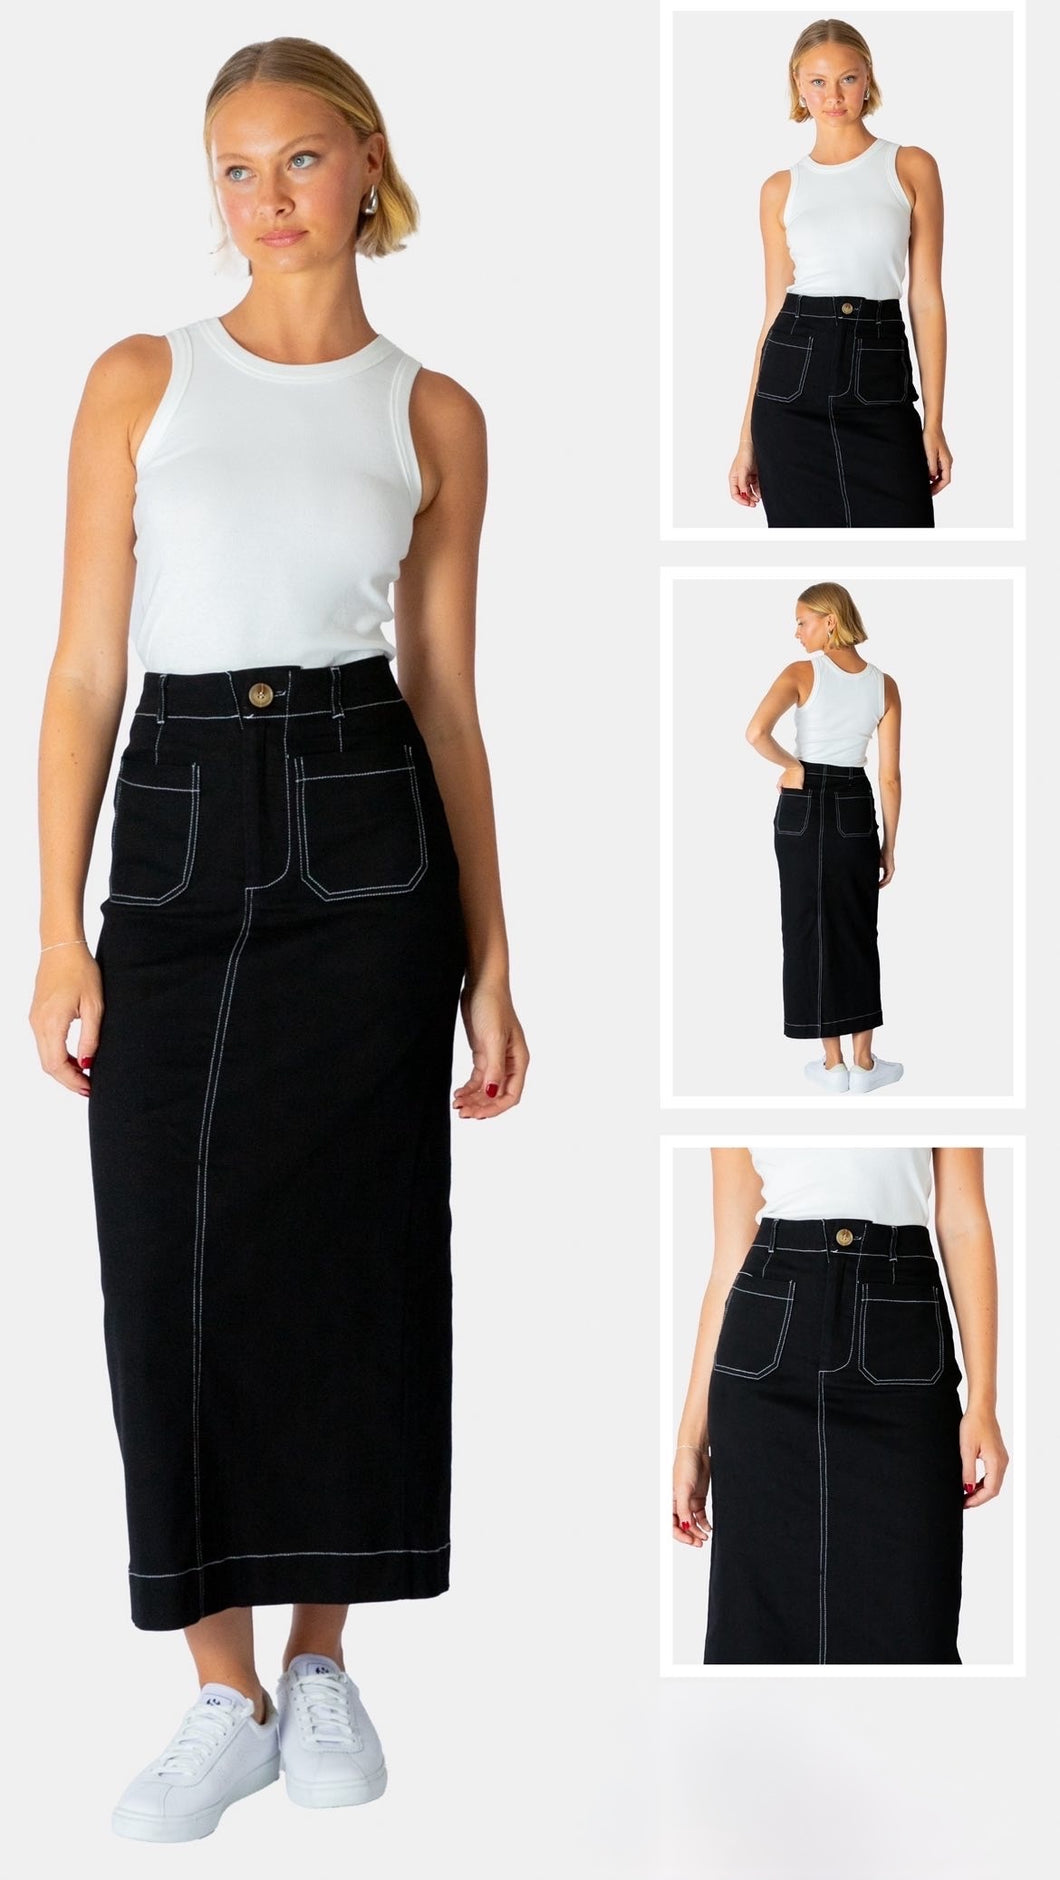 Black skirt with white stitching.